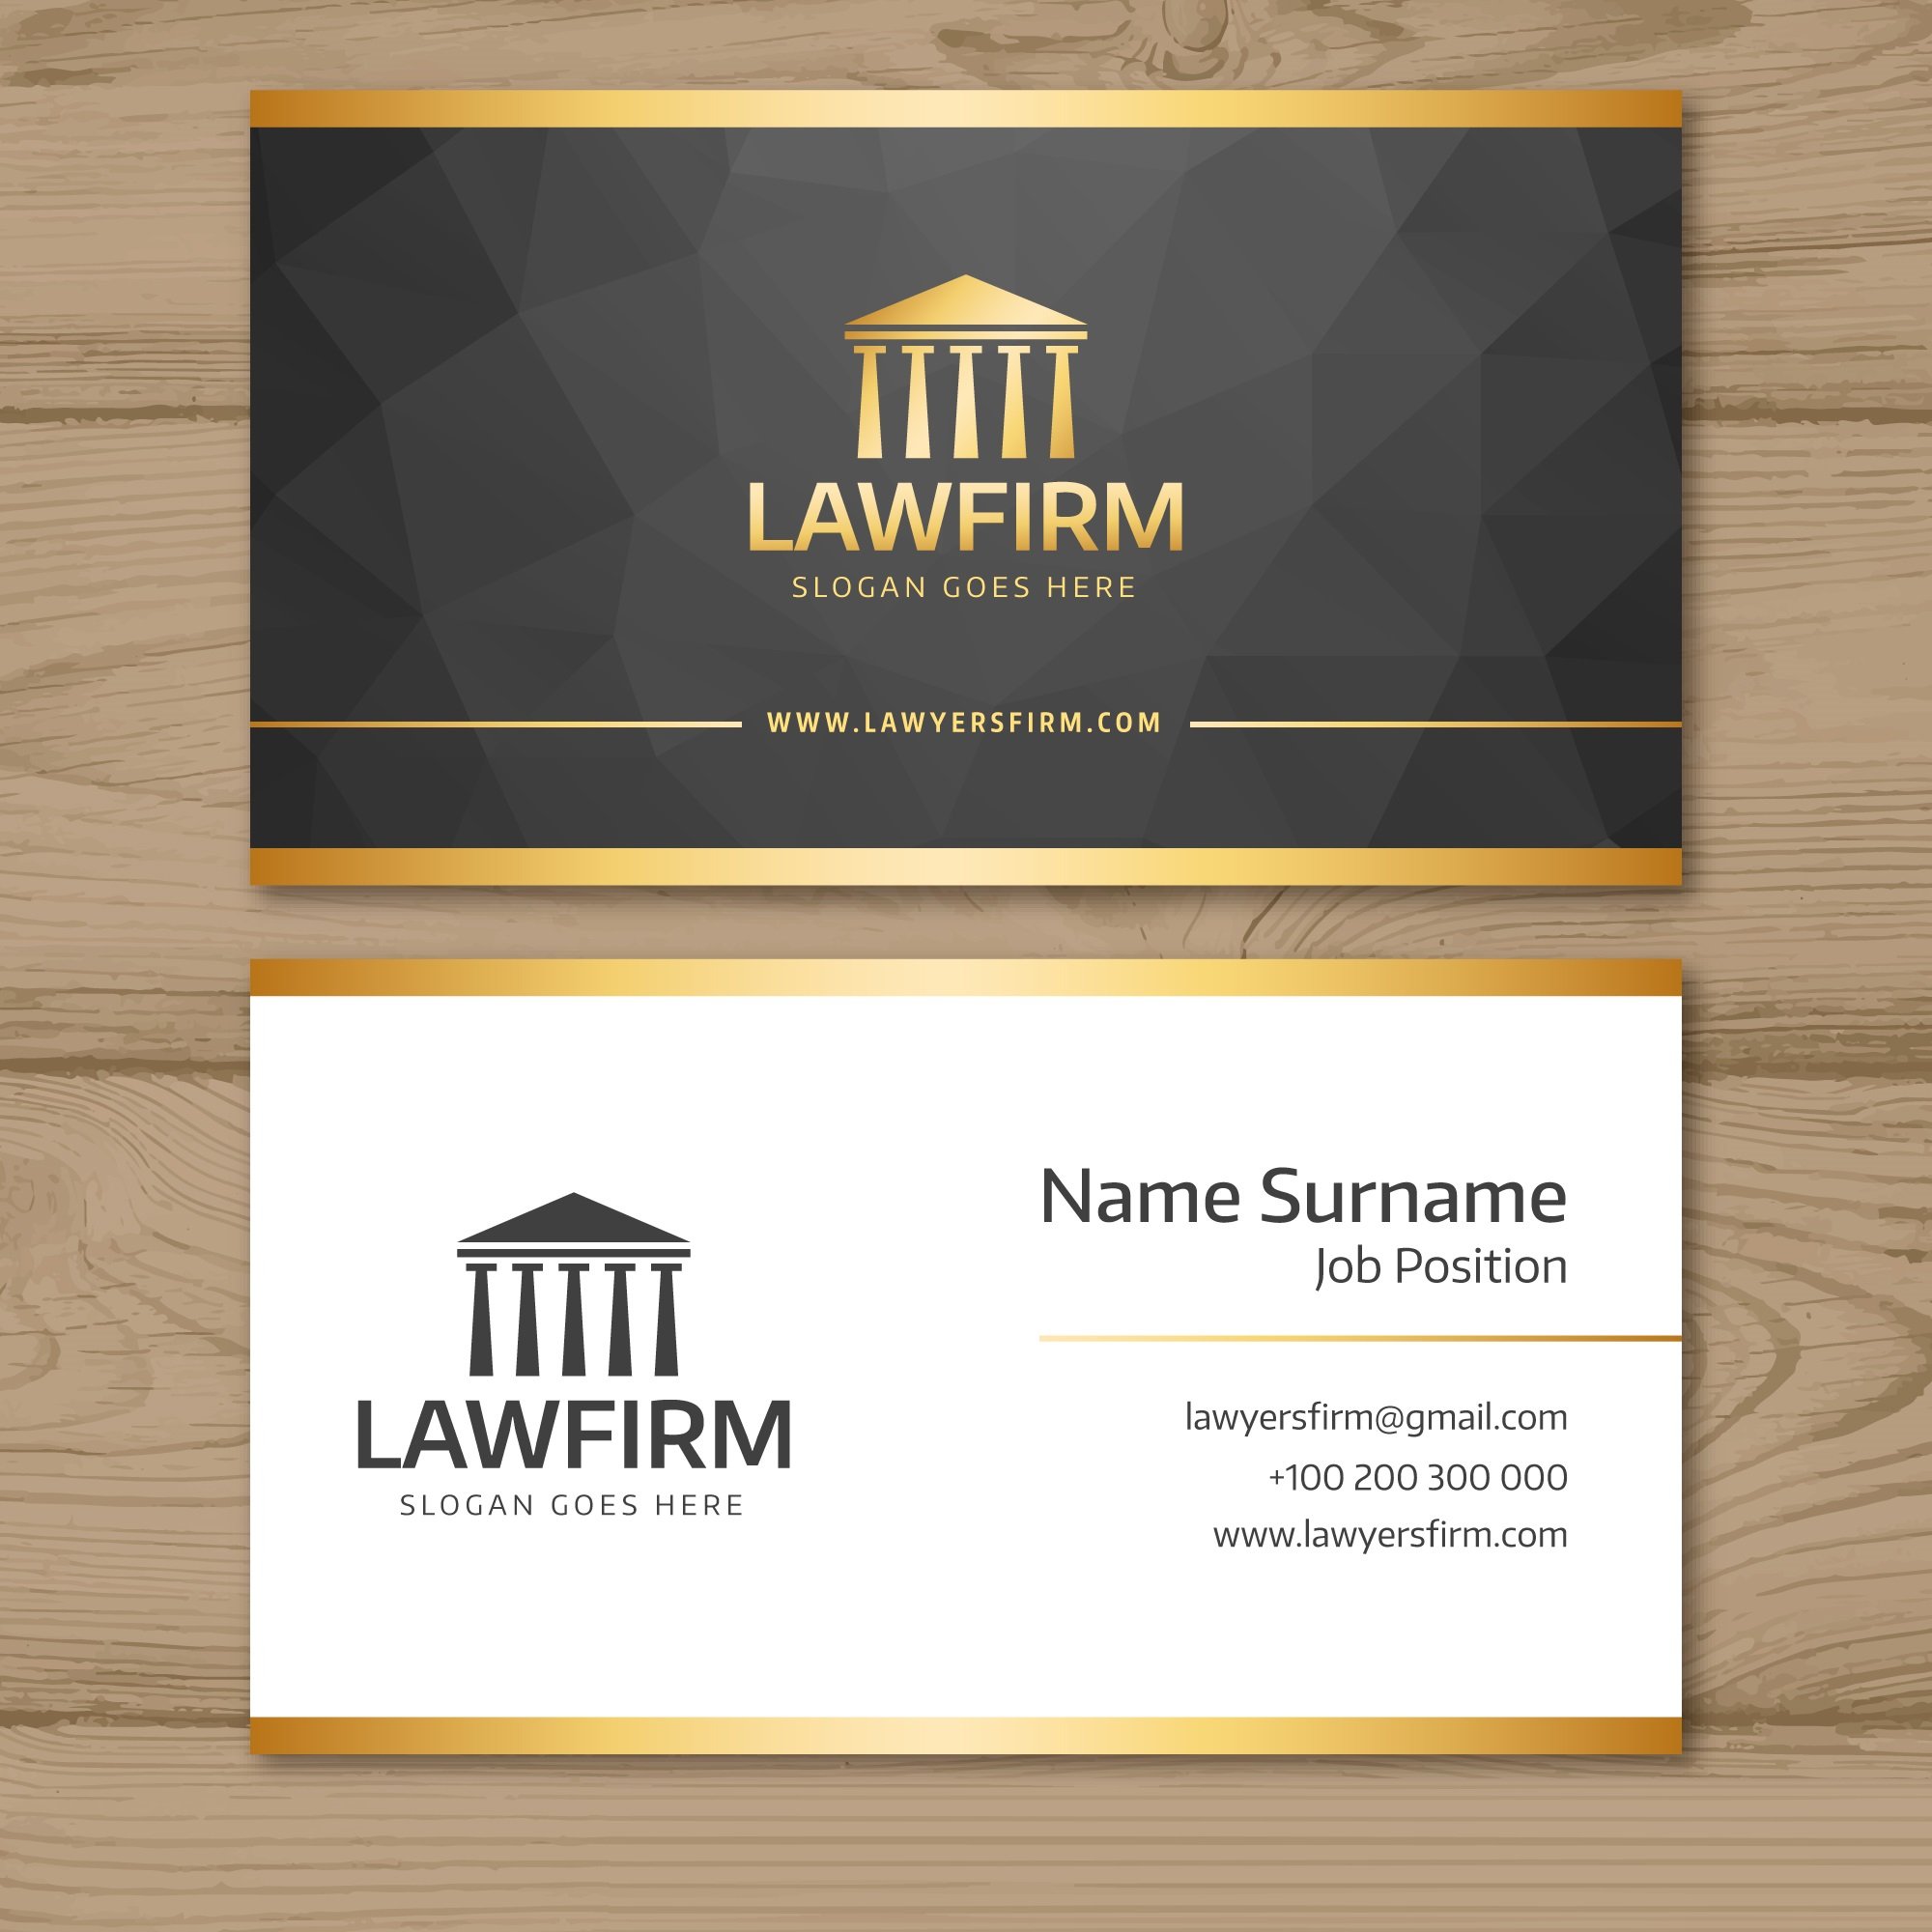 Визитка адвоката. Макет визитки адвоката. Макет визитки для юриста. Стильные визитки адвоката. Визитка юридической компании.